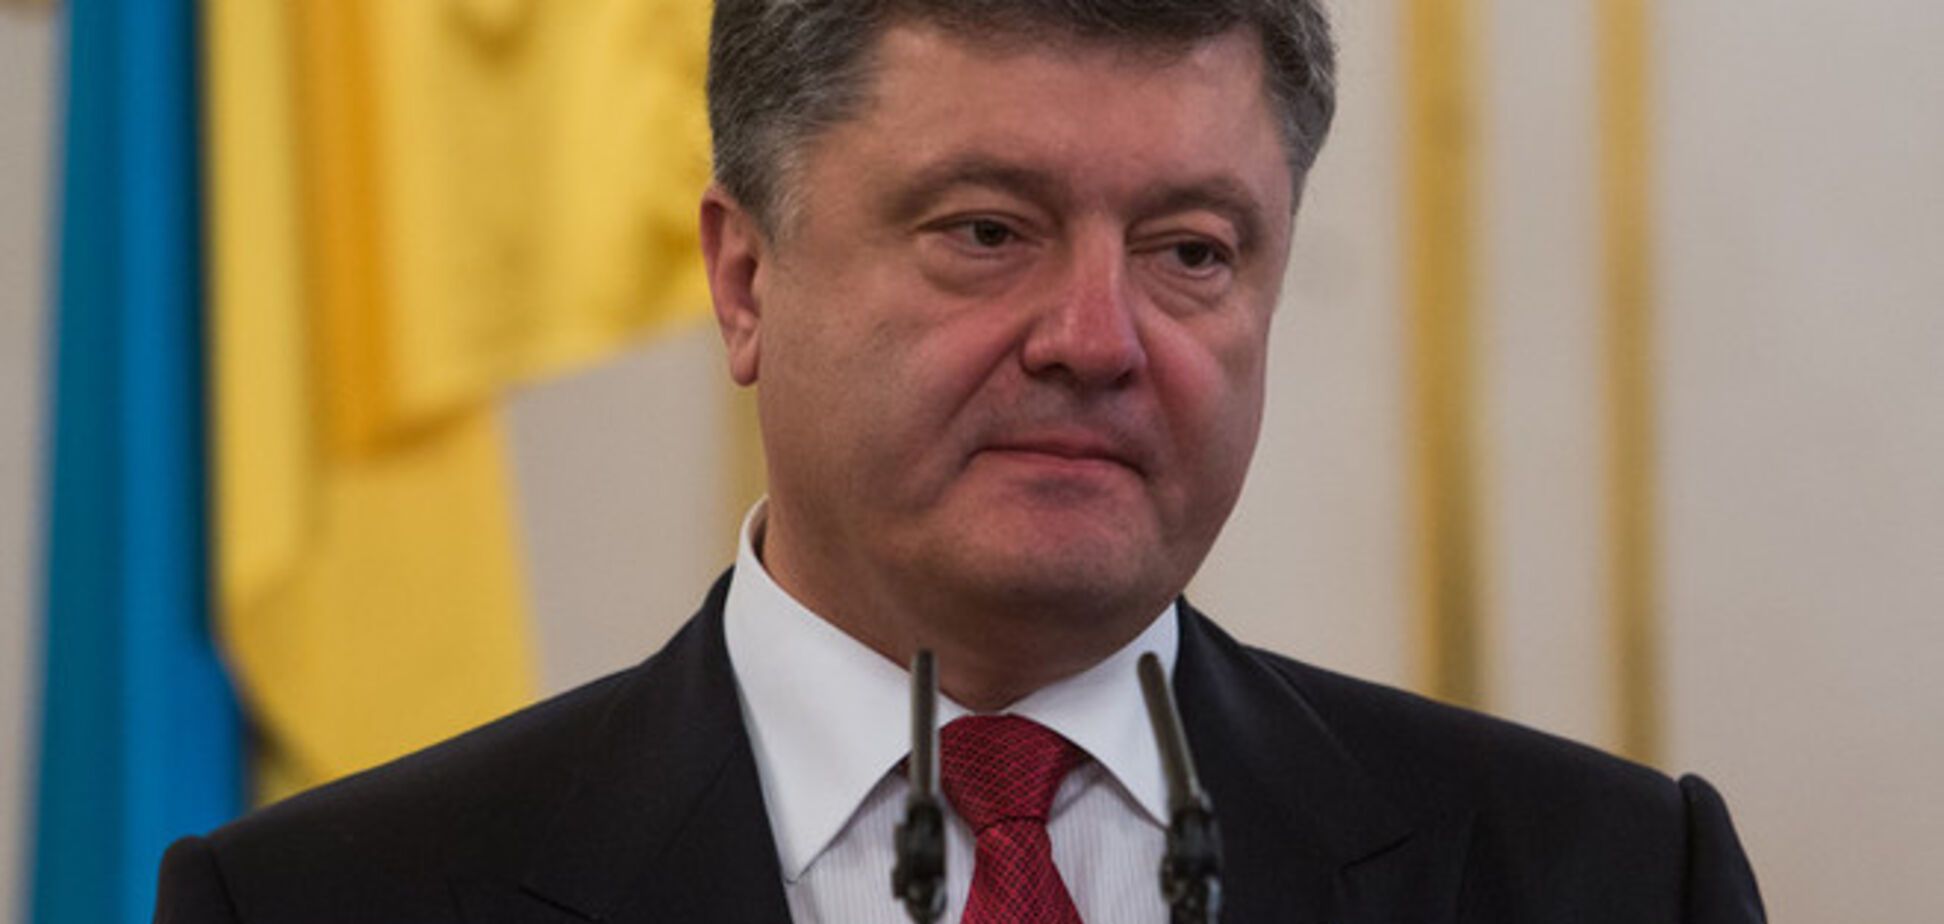 Украина восстанавливает курс на интеграцию в НАТО – обращение Порошенко к ПА альянса